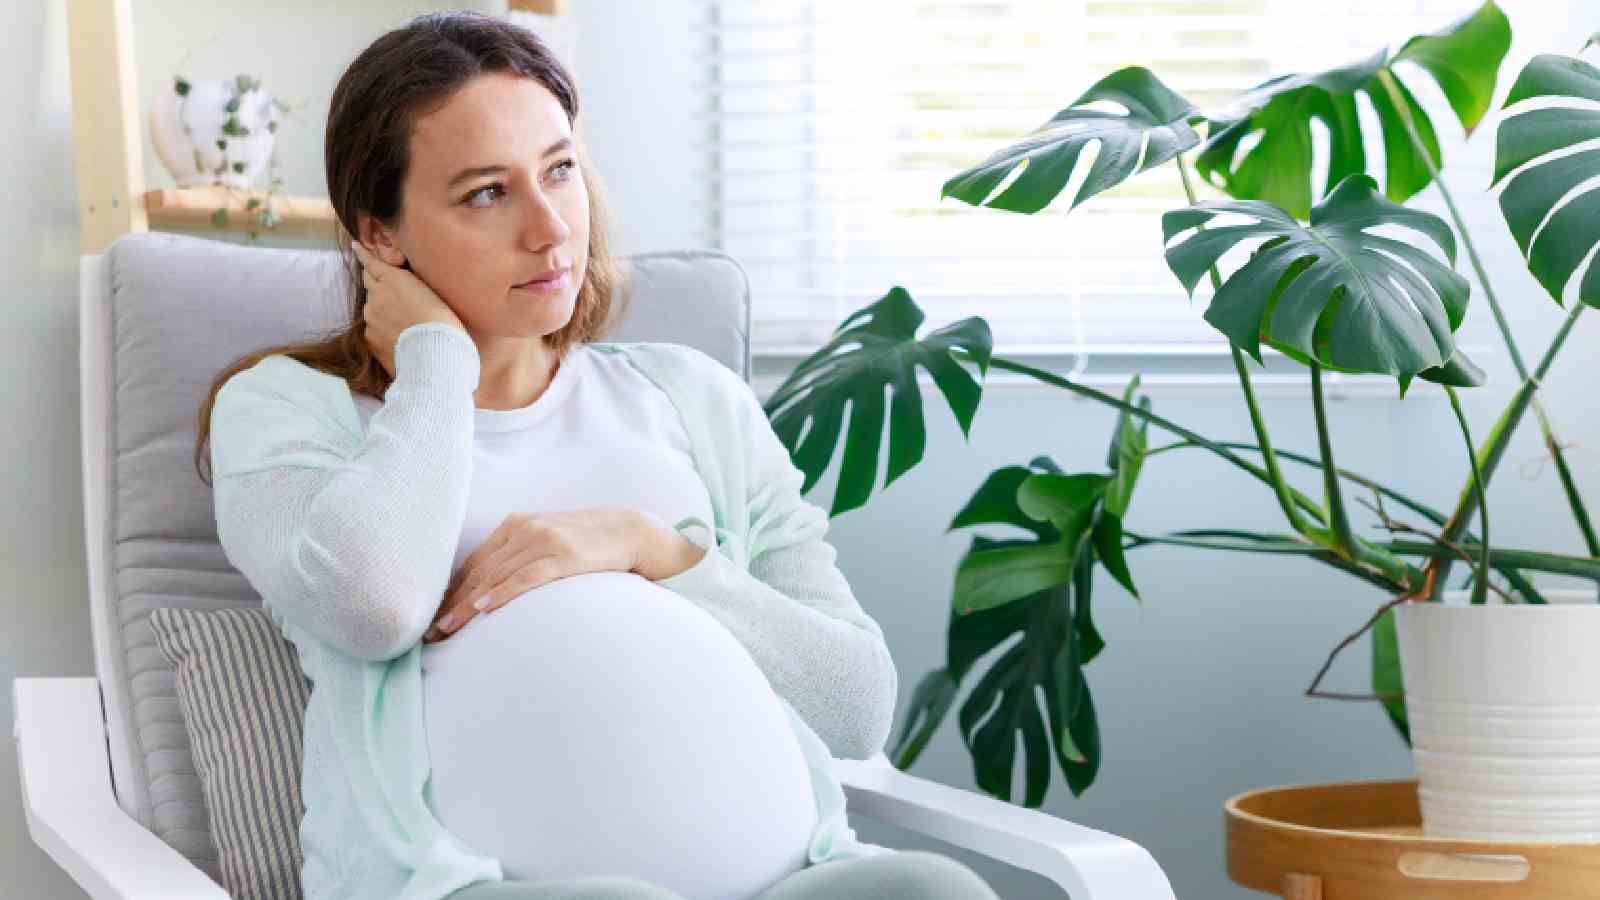 33% महिलाओं को गर्भावस्था के दौरान काफी तनाव का सामना करना पड़ता है, जानें इसे कैसे प्रबंधित करें